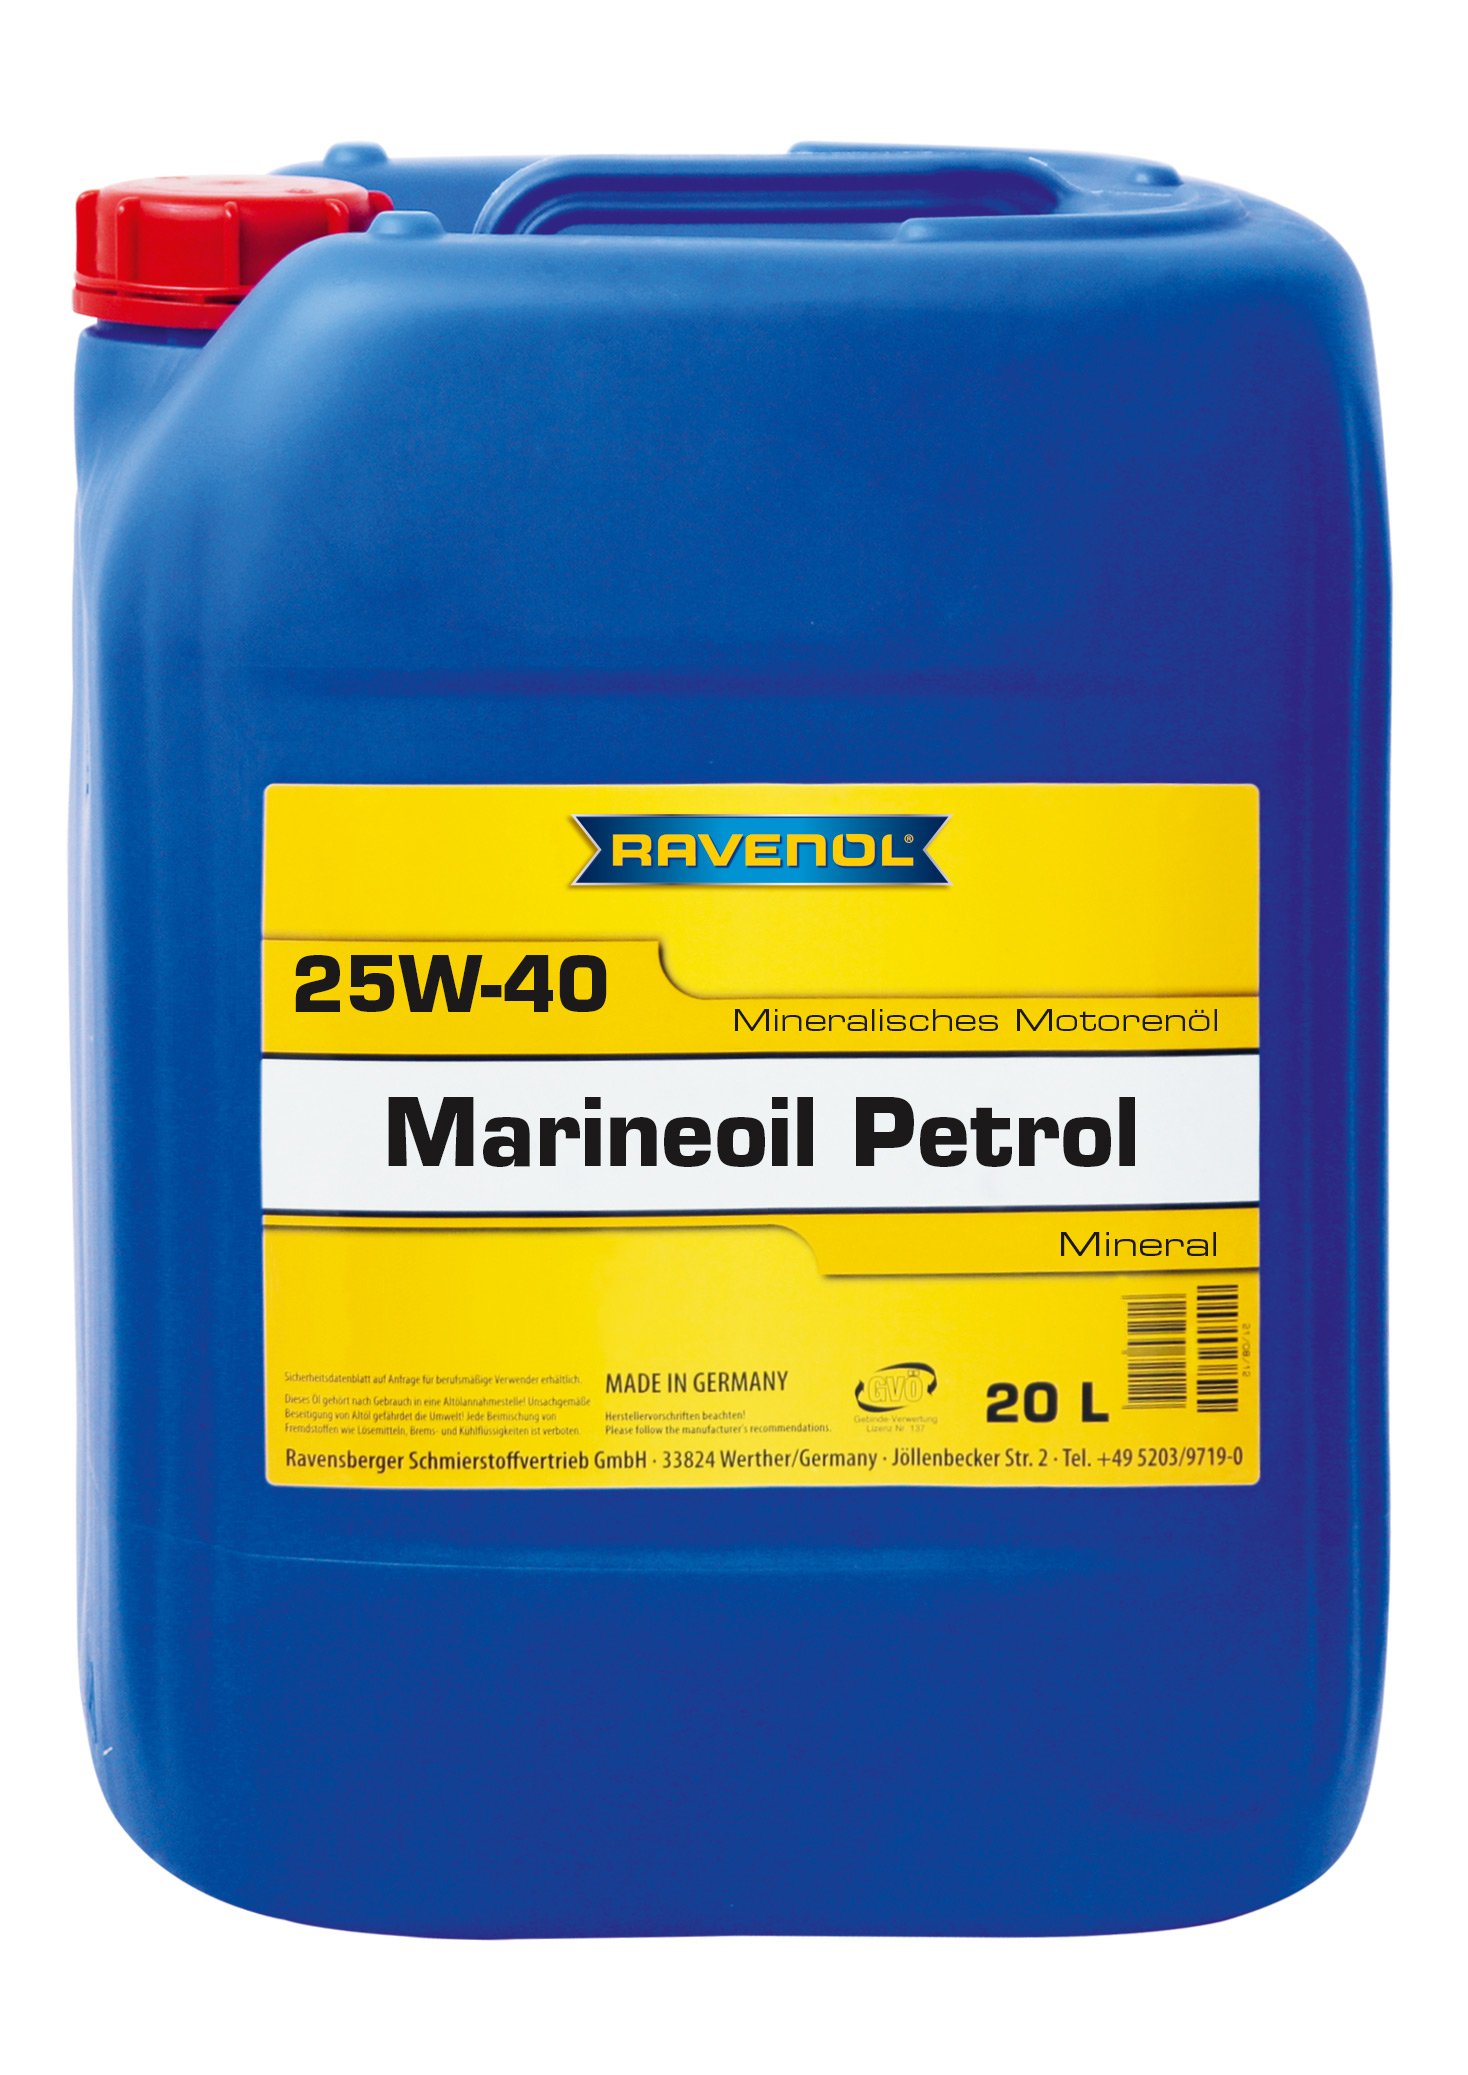 RAVENOL MARINEOIL SHPD 25W-40 mineral von RAVENOL